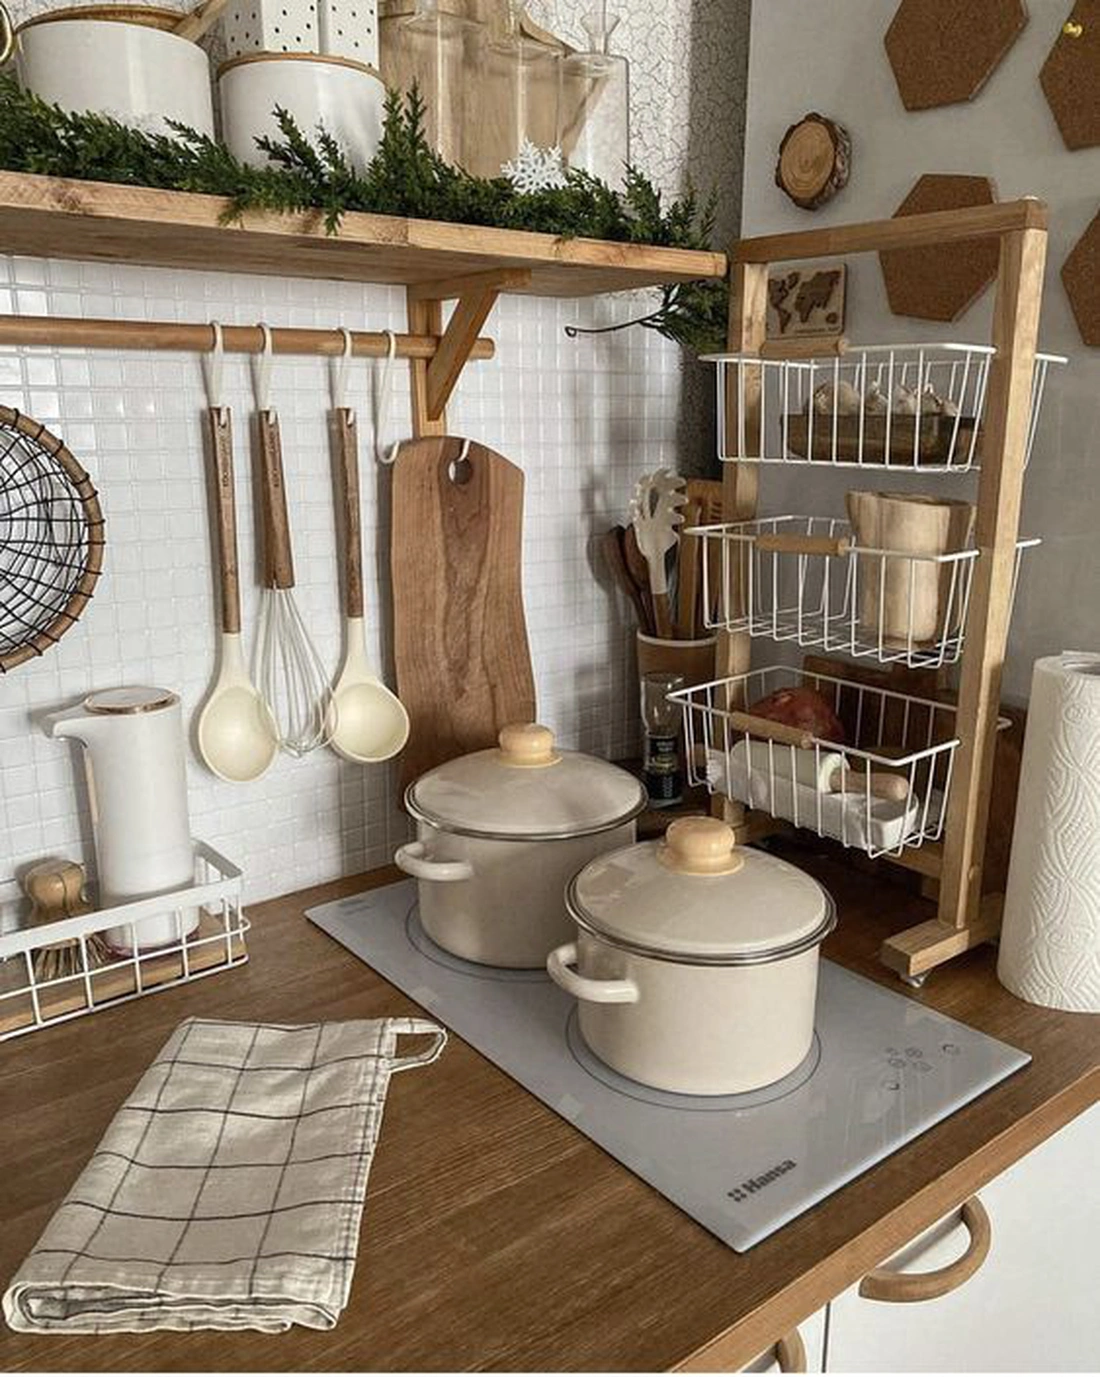 Корзина — верное решение, если требуется упорядочить кухонные принадлежности и мелкие приборы